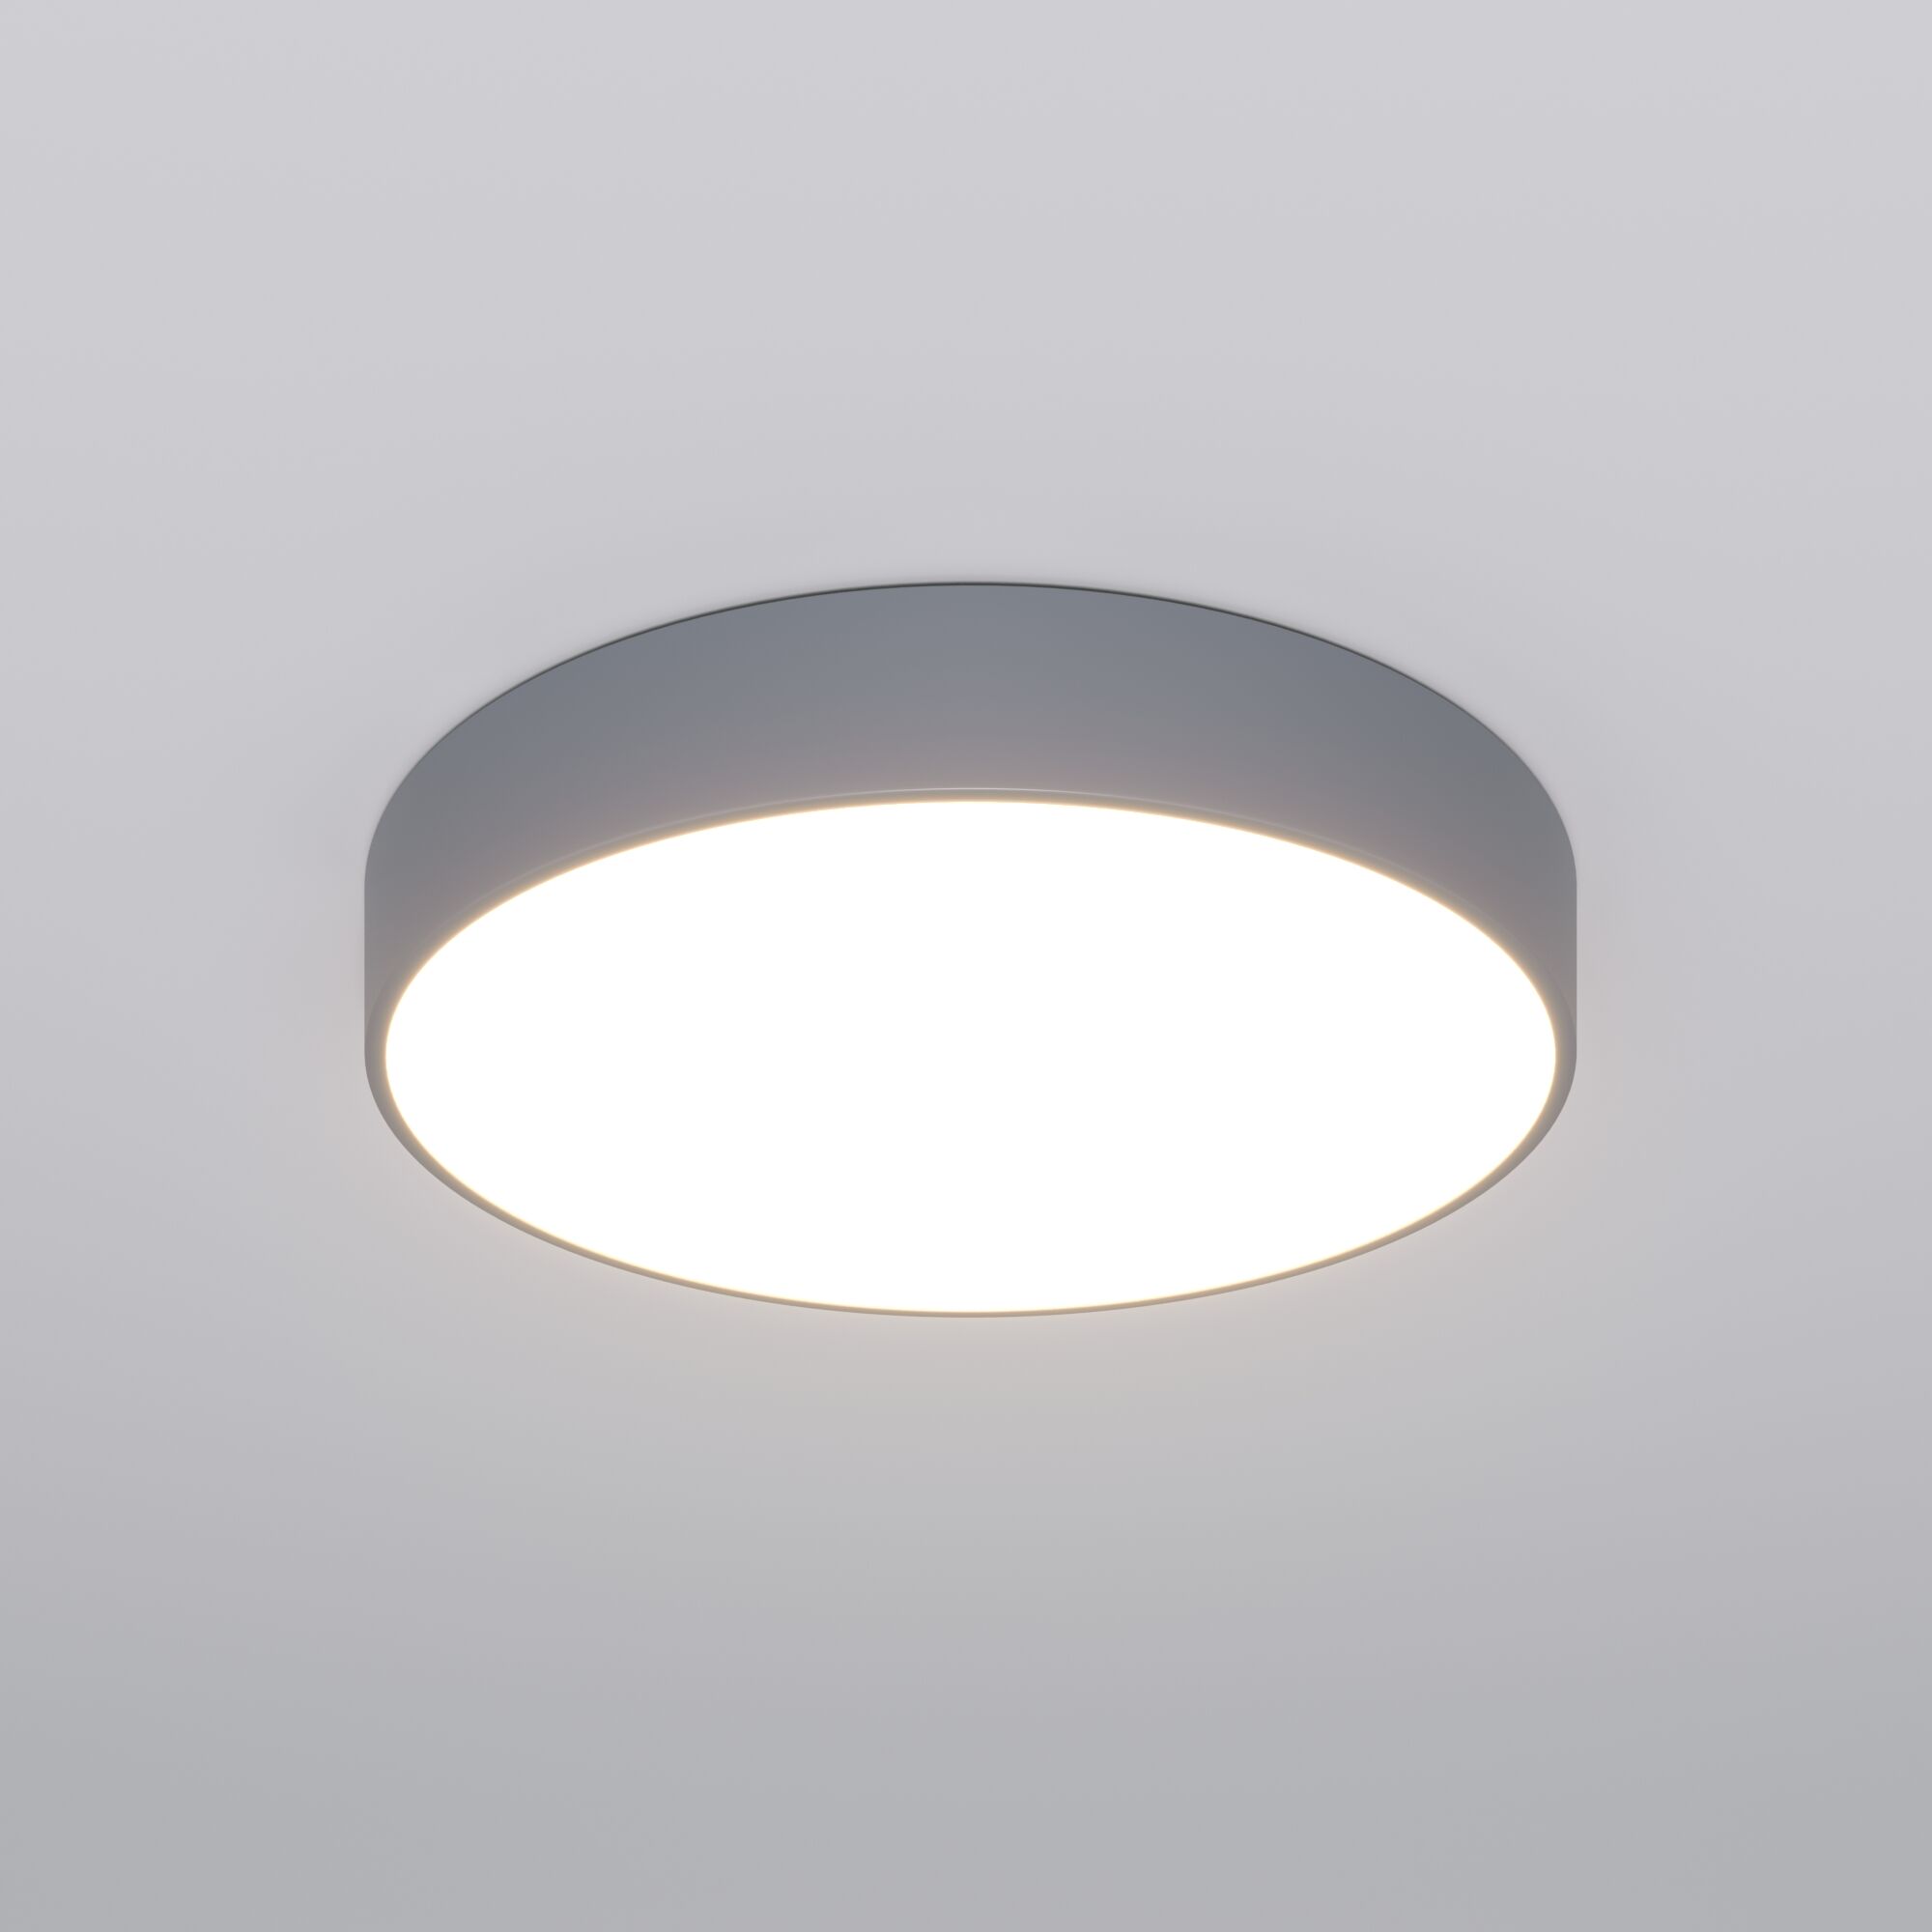 Потолочный светодиодный светильник с регулировкой яркости и цветовой температуры Eurosvet Entire 90319/1 серый. Фото 2